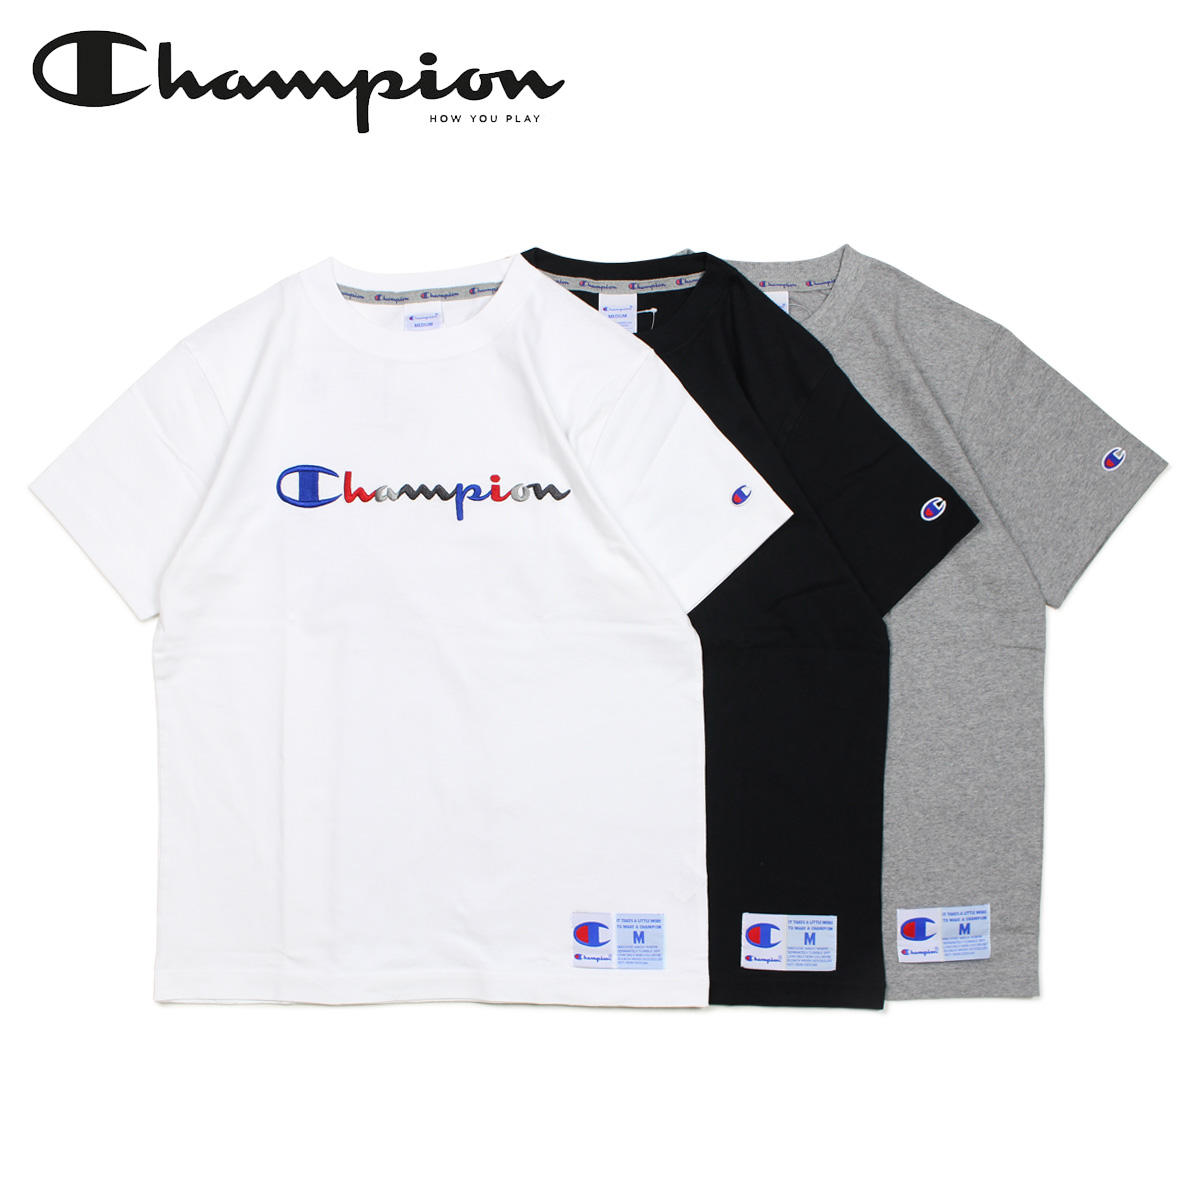 champion shirt black and white